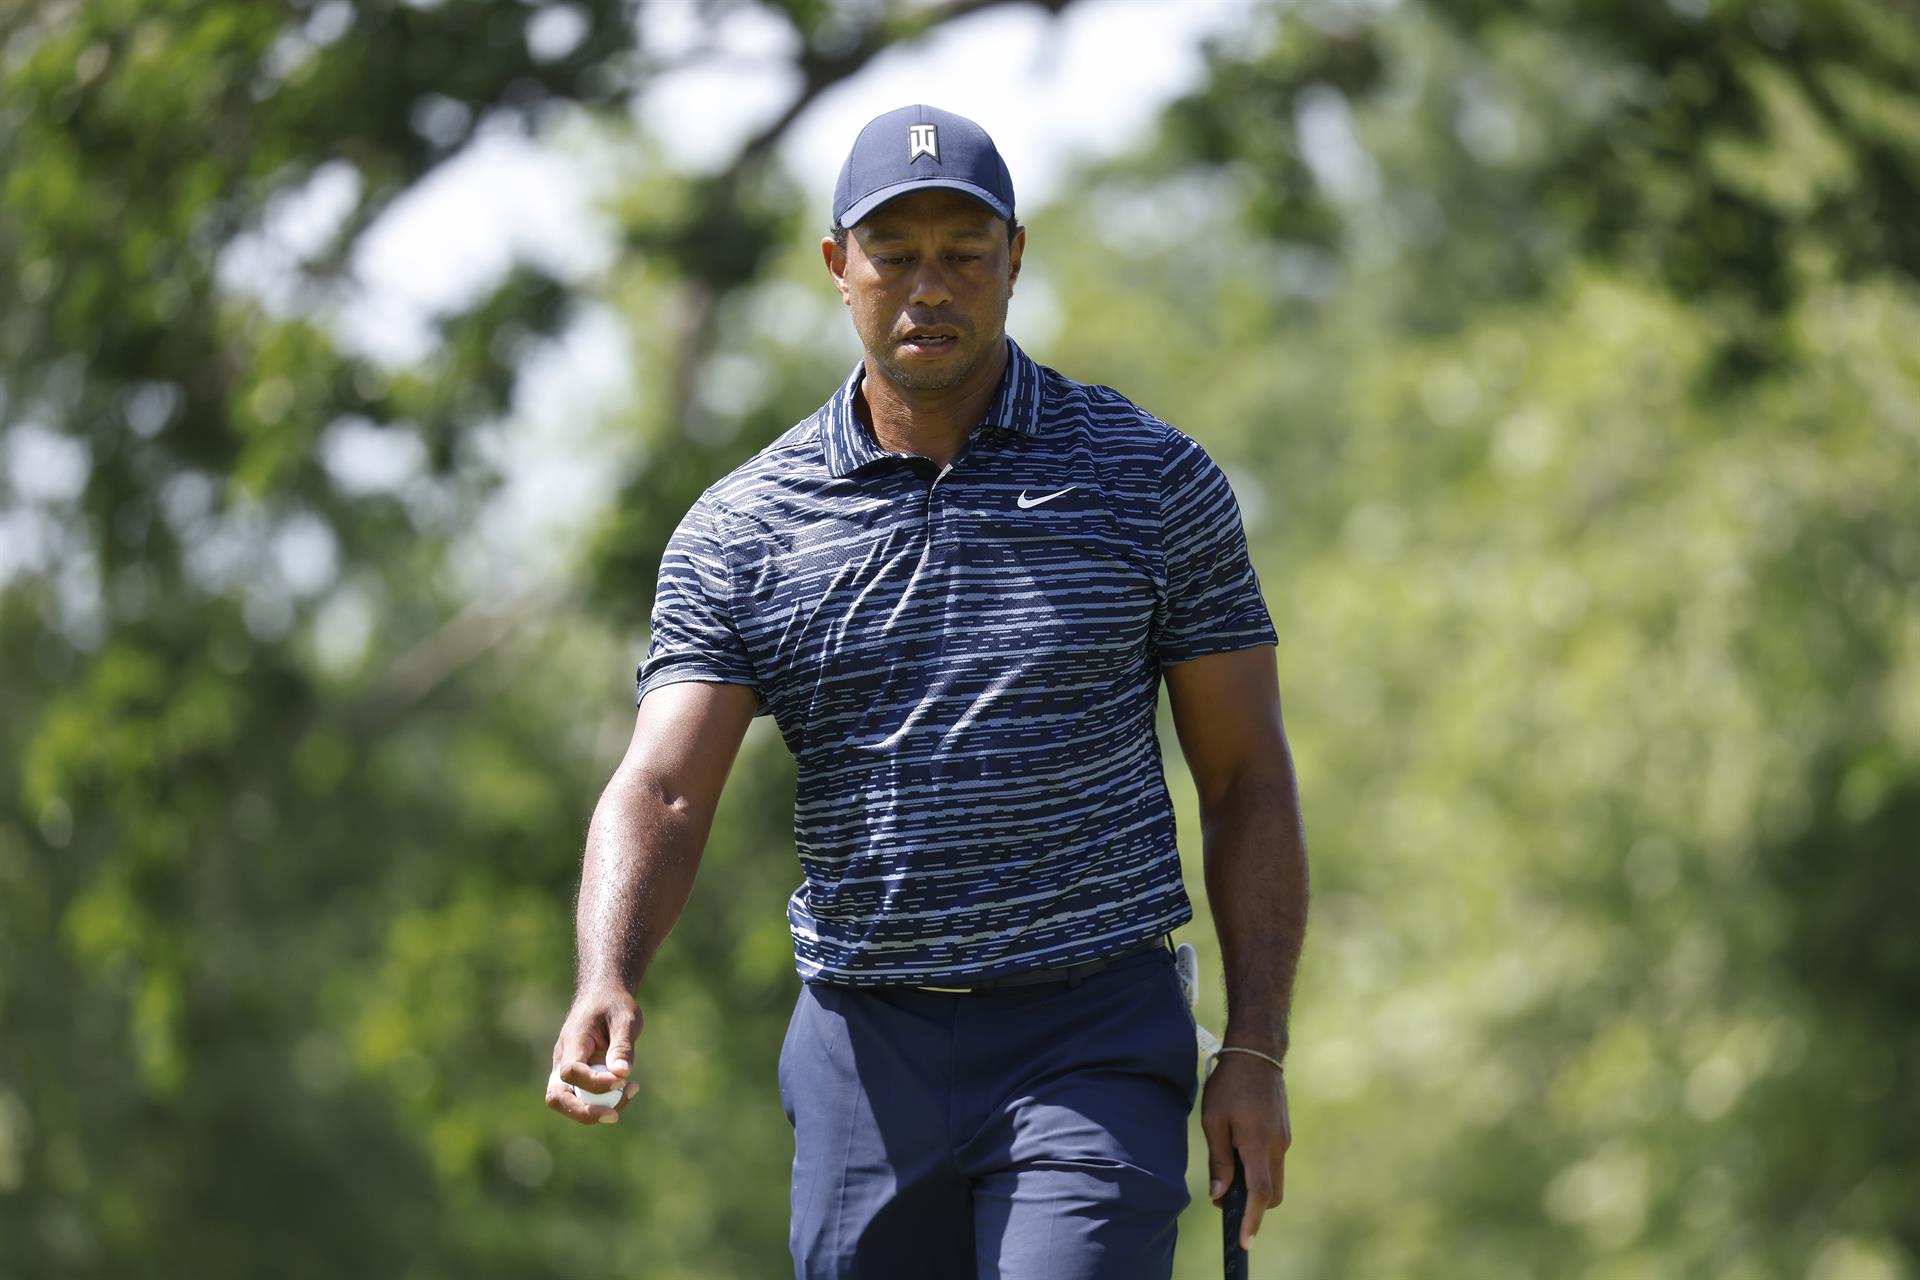 Tiger Woods arranca con 74 (+4) en el Campeonato de la PGA